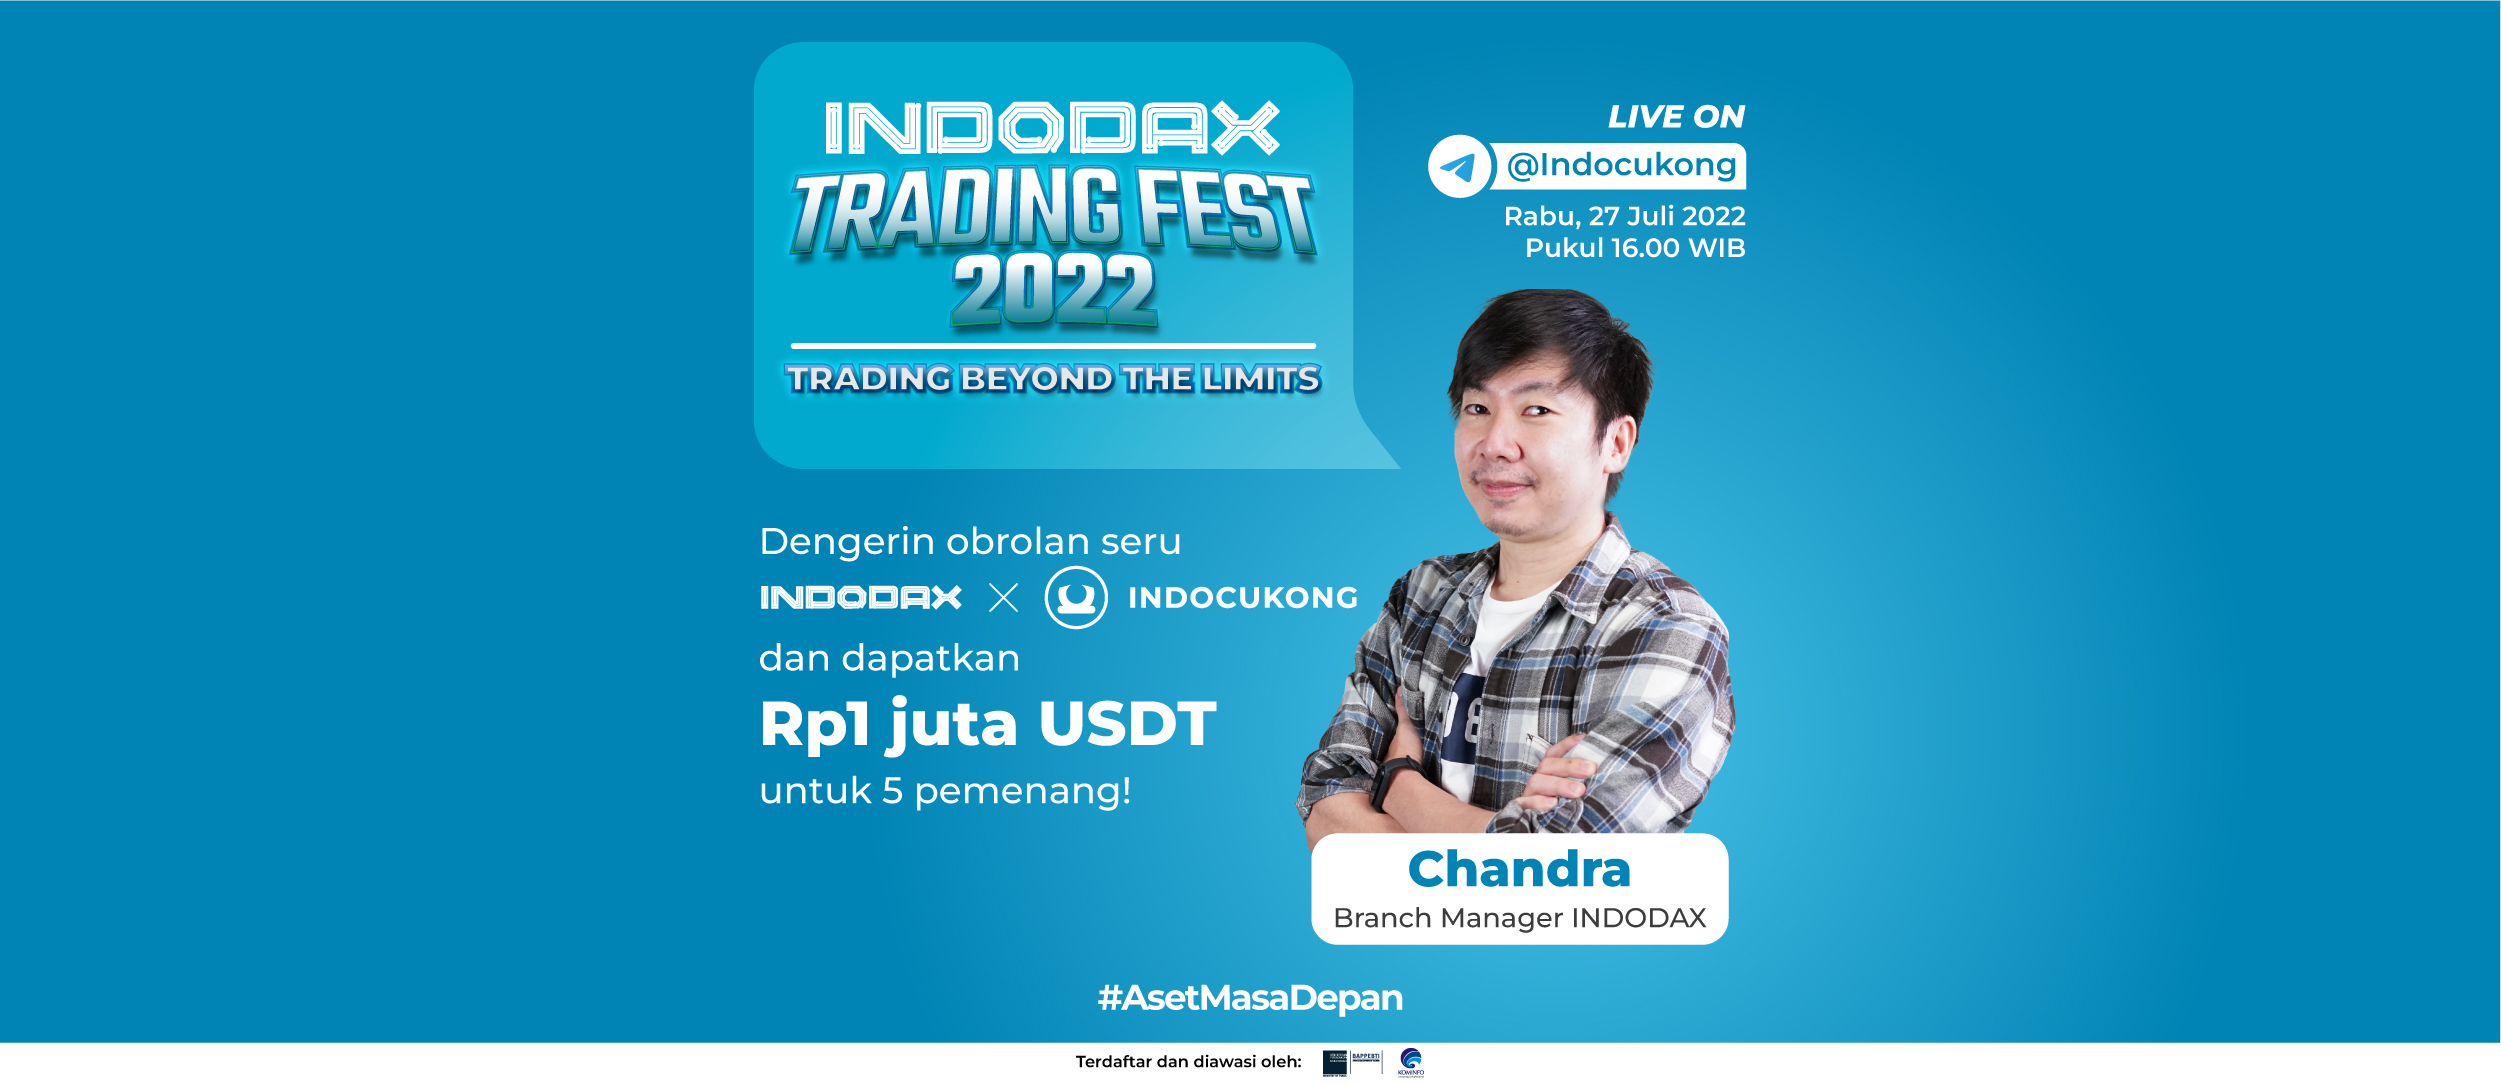 Telegram Live Indodax & Indocukong: Indodax Trading Fest 2022